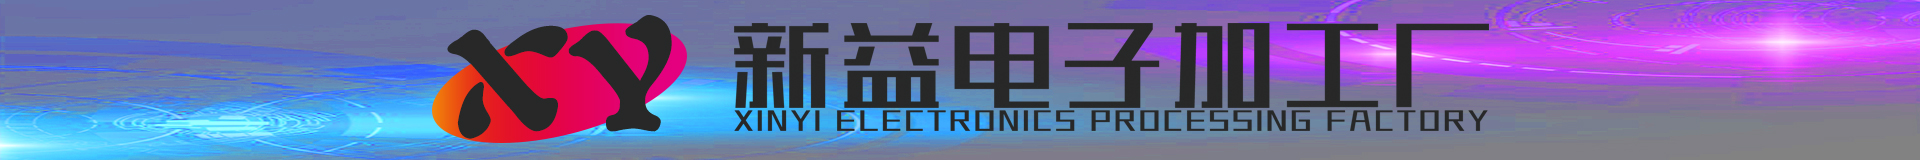 惠州市新益电子加工厂